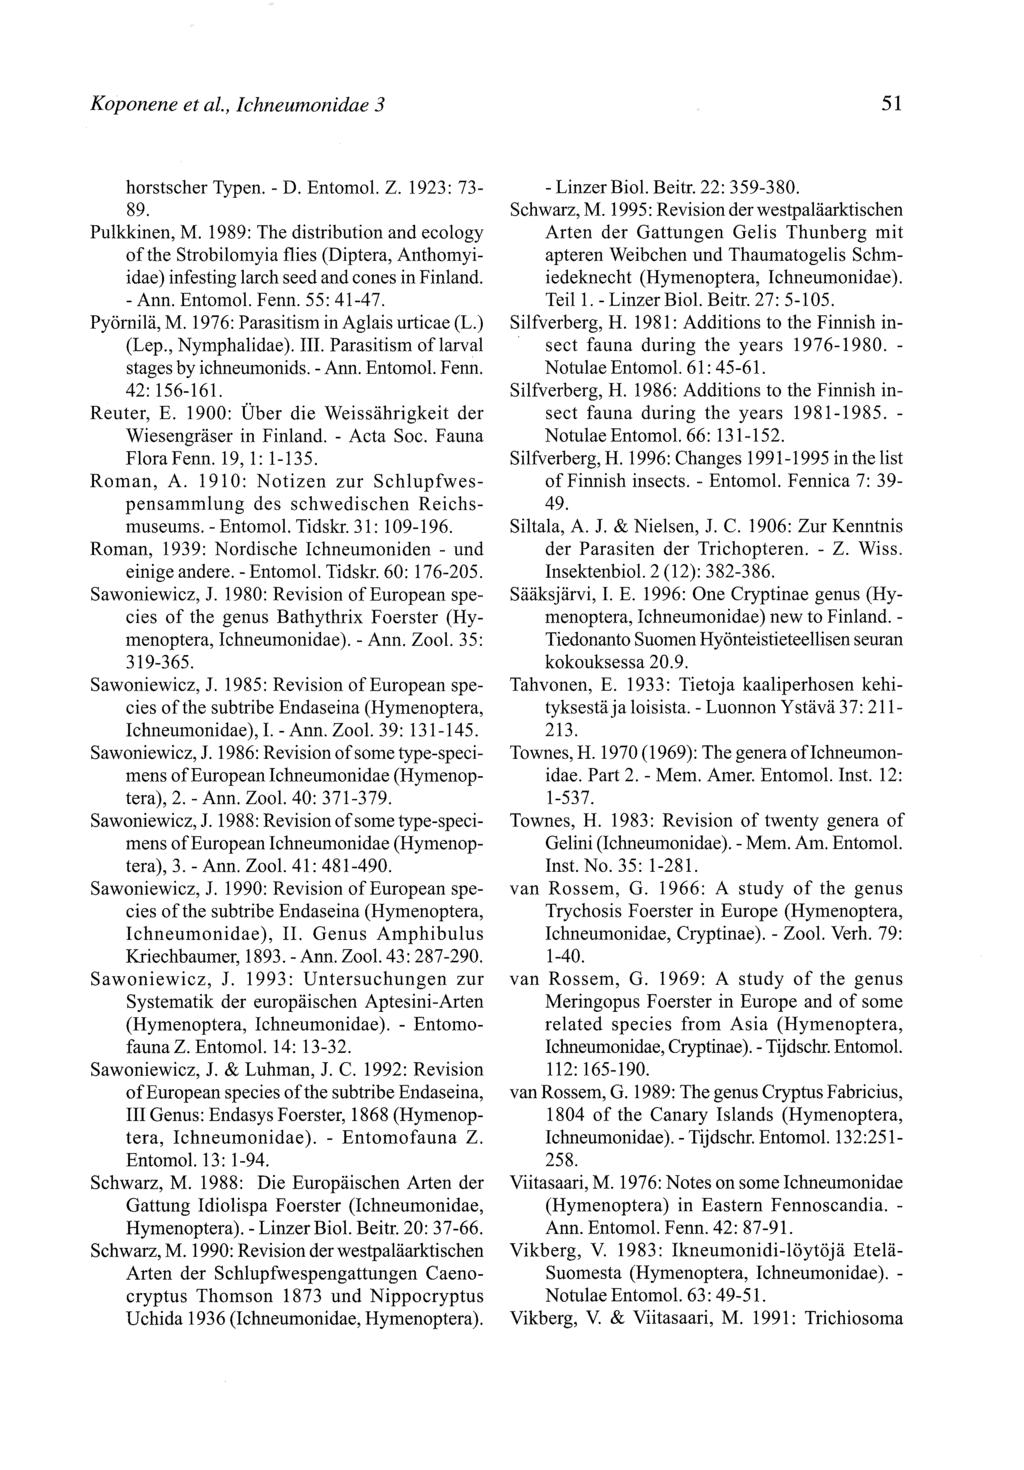 Koponene et al., Ichneumonidae 3 51 horstscher Typen. - D. Entomol. Z. 1923:73-89. Pulkkinen, M.